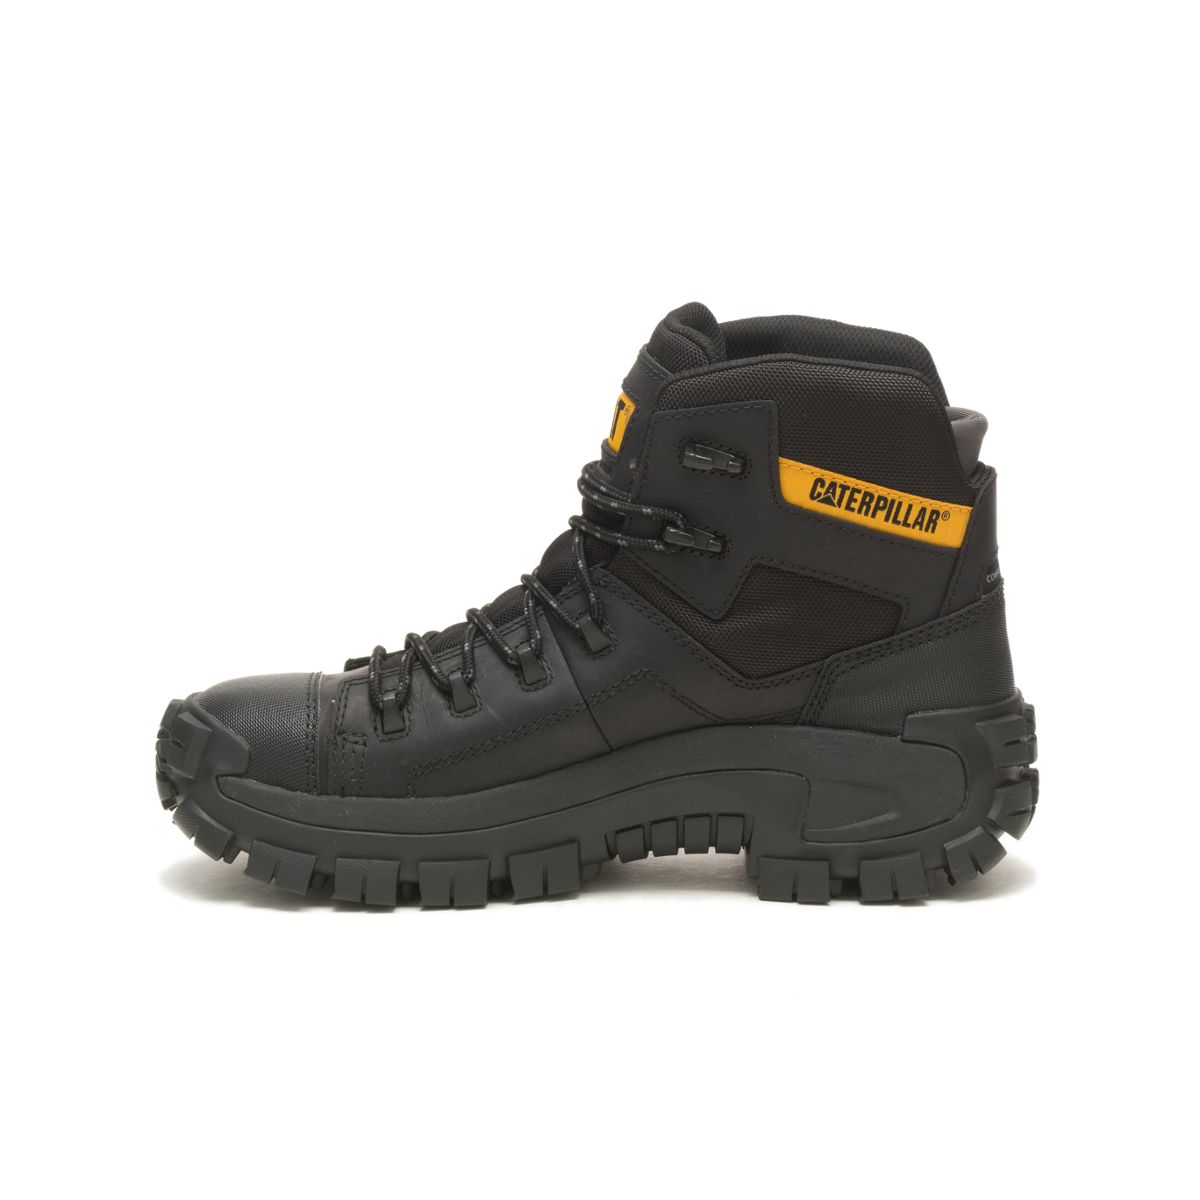 Invader Hiker Waterproof Composite Toe Work Boot, Black, dynamic 4